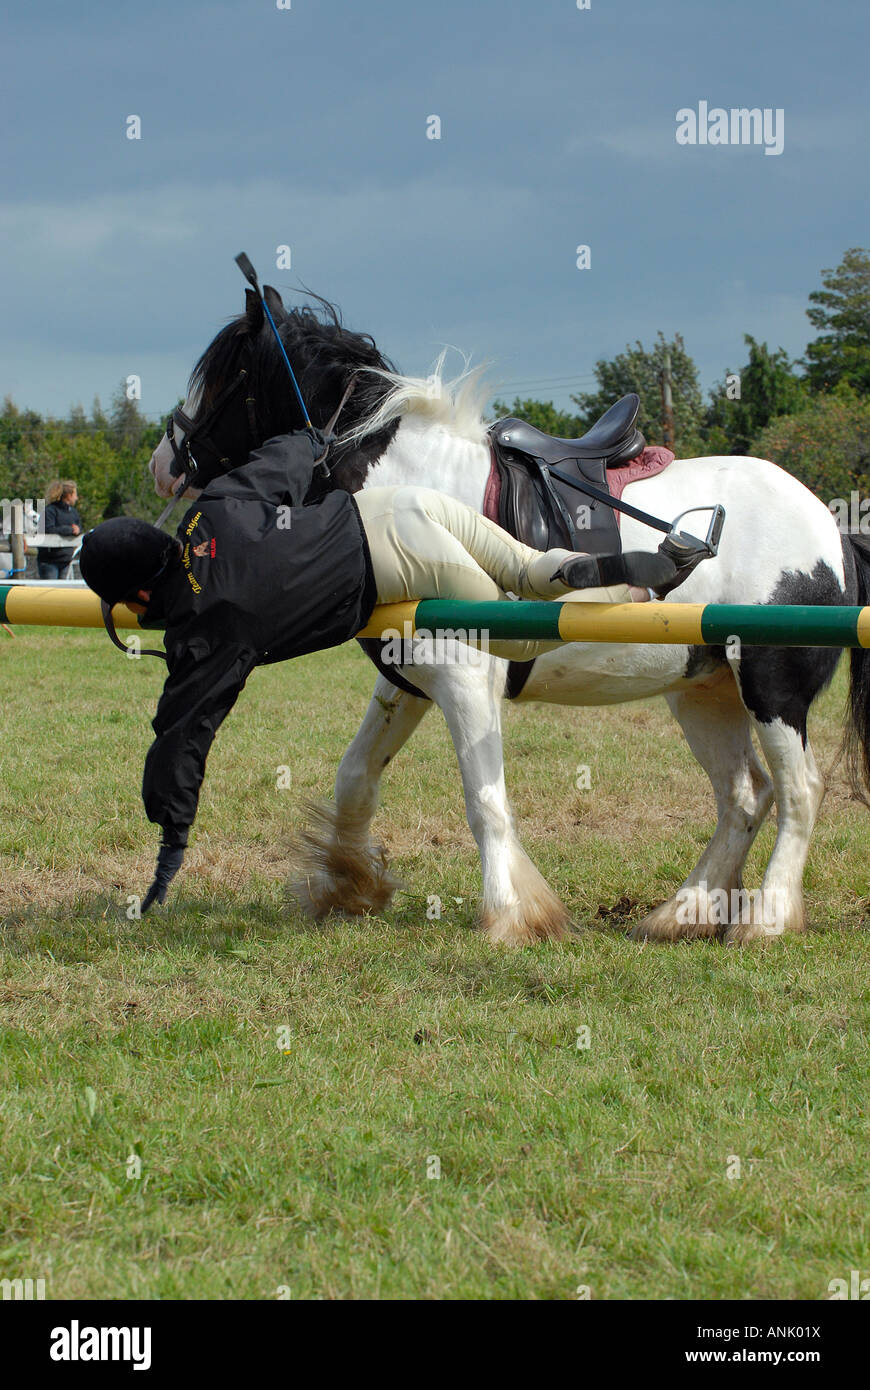 Rider projetés de tomber de cheval dans les airs Banque D'Images